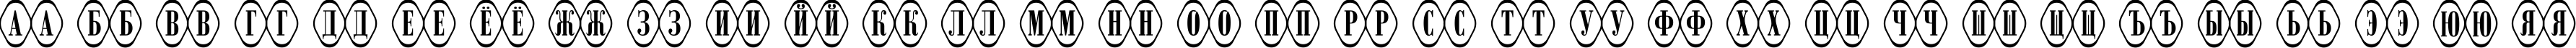 Пример написания русского алфавита шрифтом a_RombyRndOtl